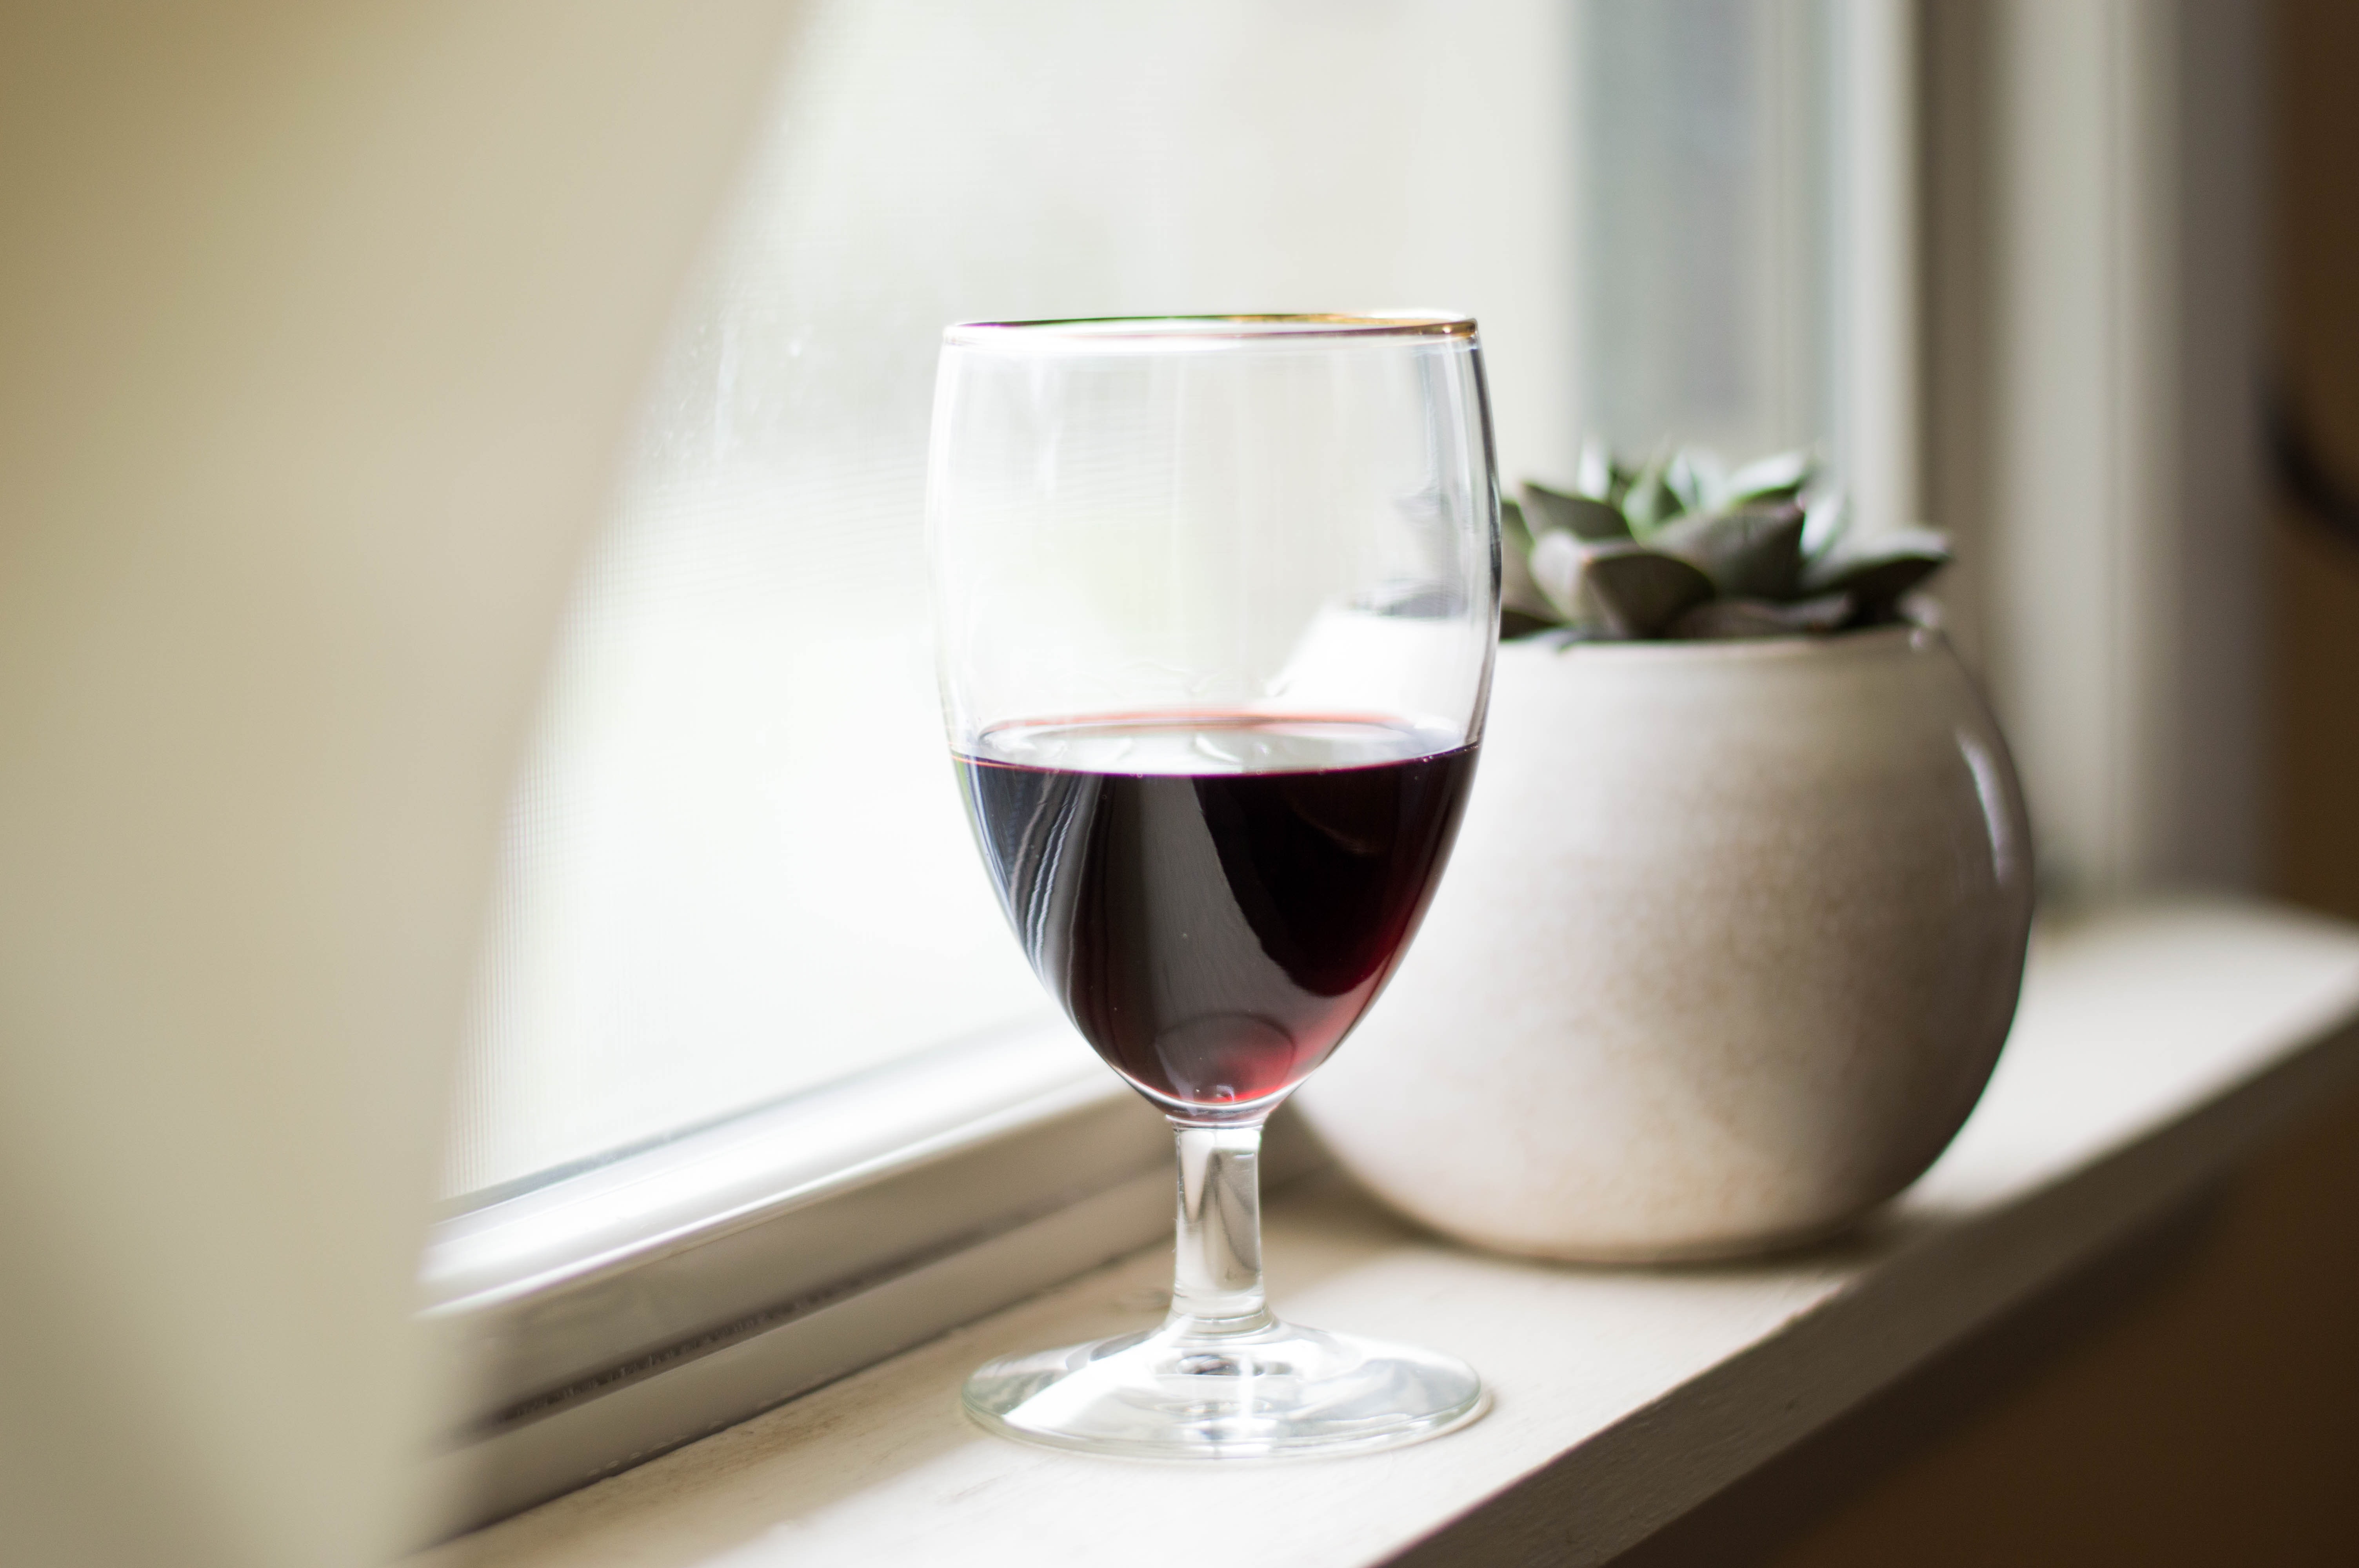 5 бокал вина. Усадьба Дивноморское вино. Красное вино. Красивые бокалы. Бокал вина на столе.